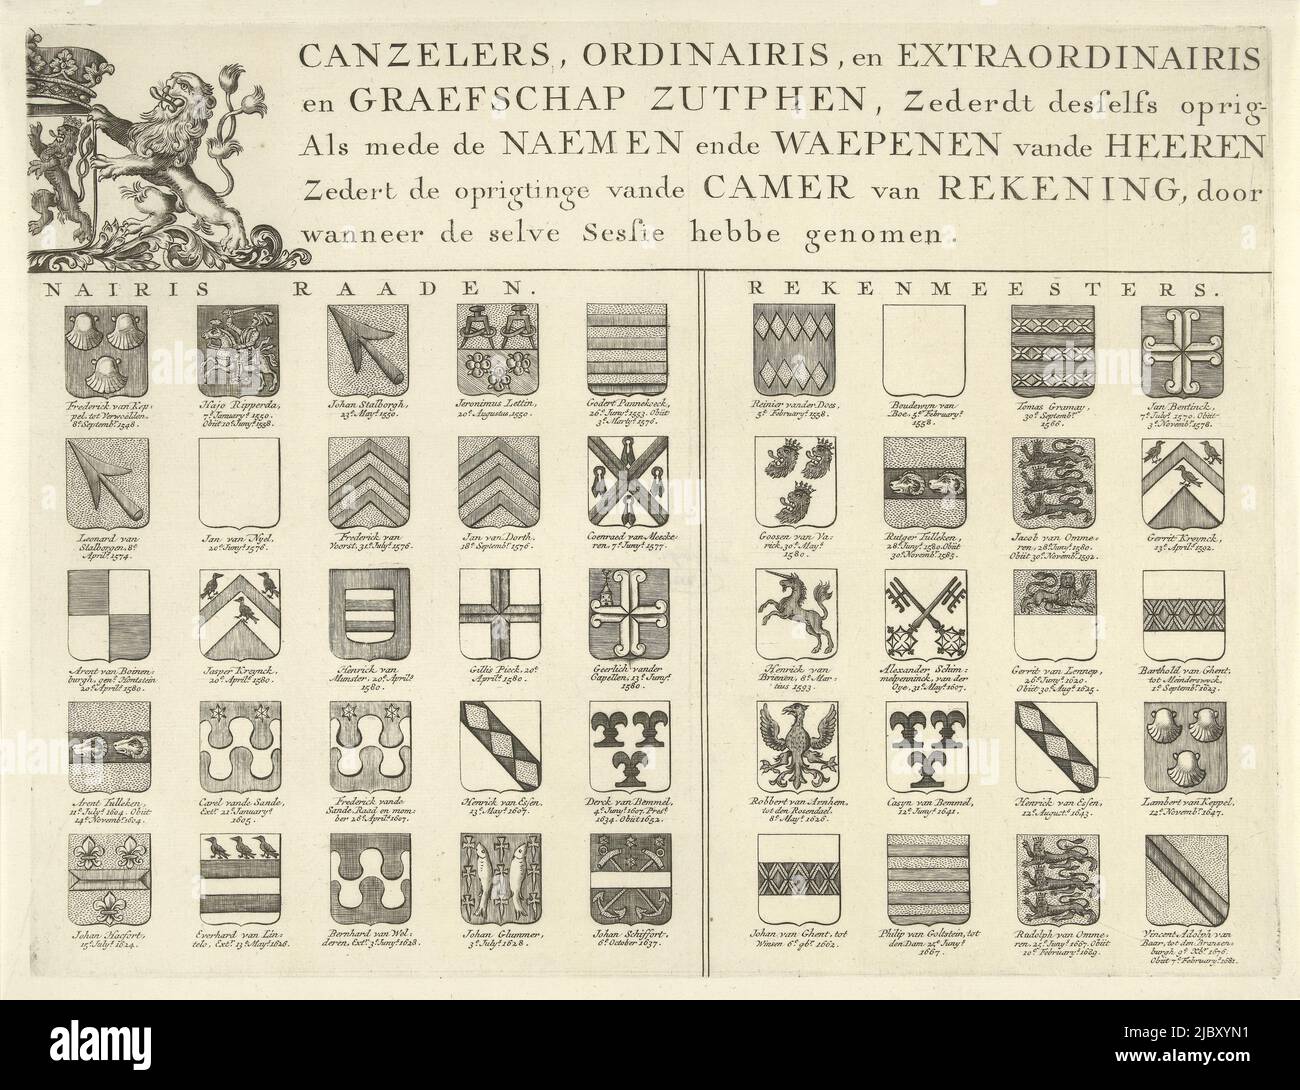 Noms et armes dans la principauté de Gelre et le comté de Zutphen, en haut à droite, imprimerie: Wilhelmus Ten Haegh, pays Bas, 1700 - 1799, papier, gravure, h 277 mm × l 362 mm Banque D'Images